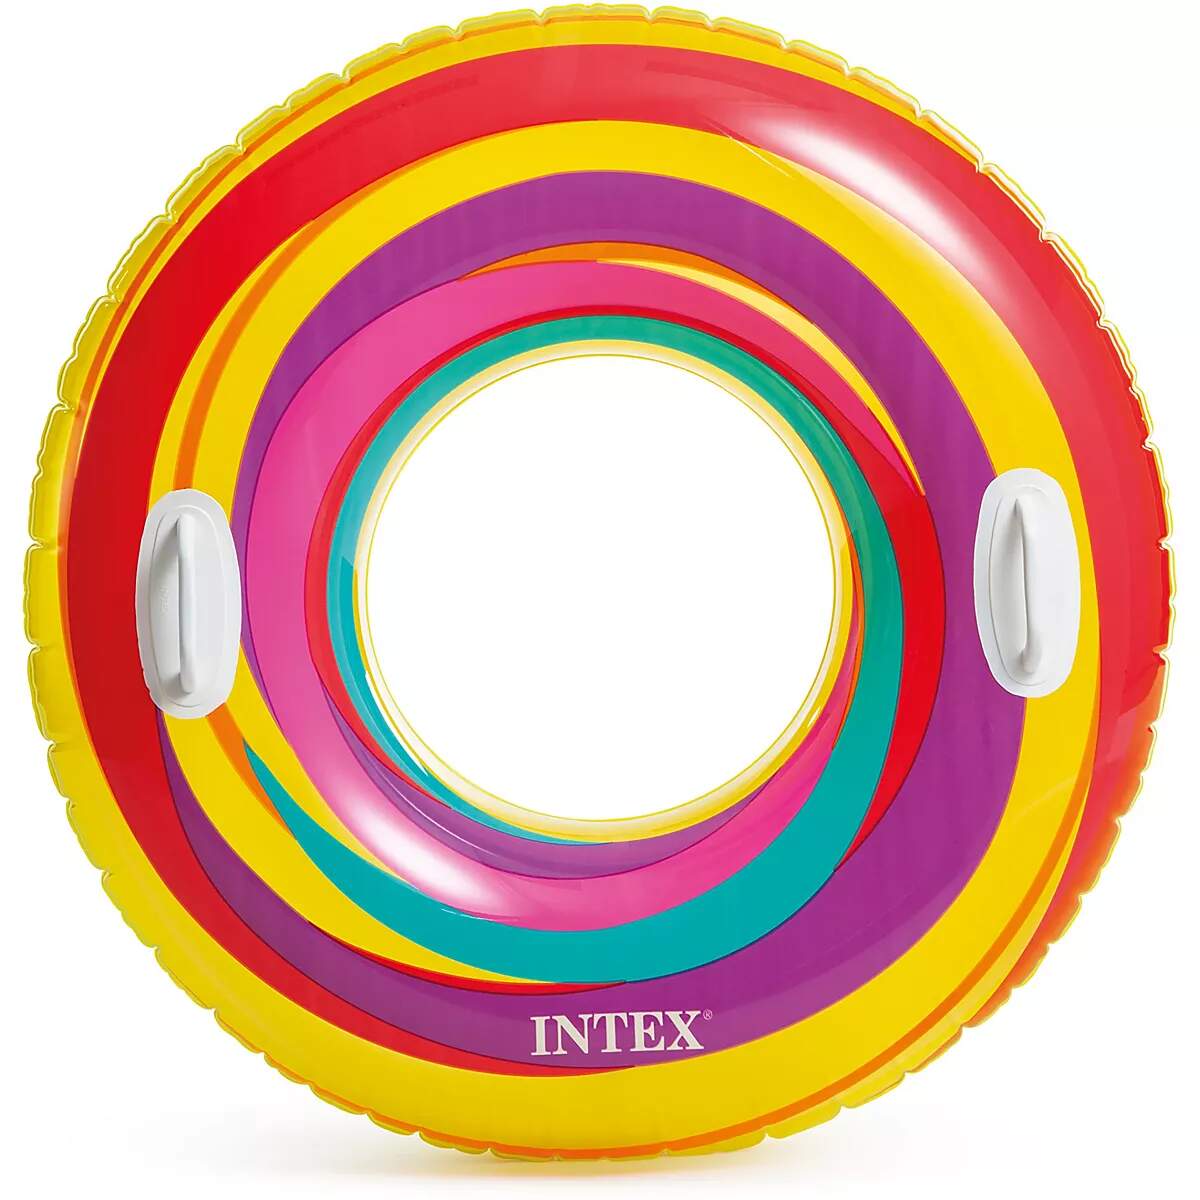 INTEX Swirly Whirly Inflatable Pool Swim Tubes - Assortment